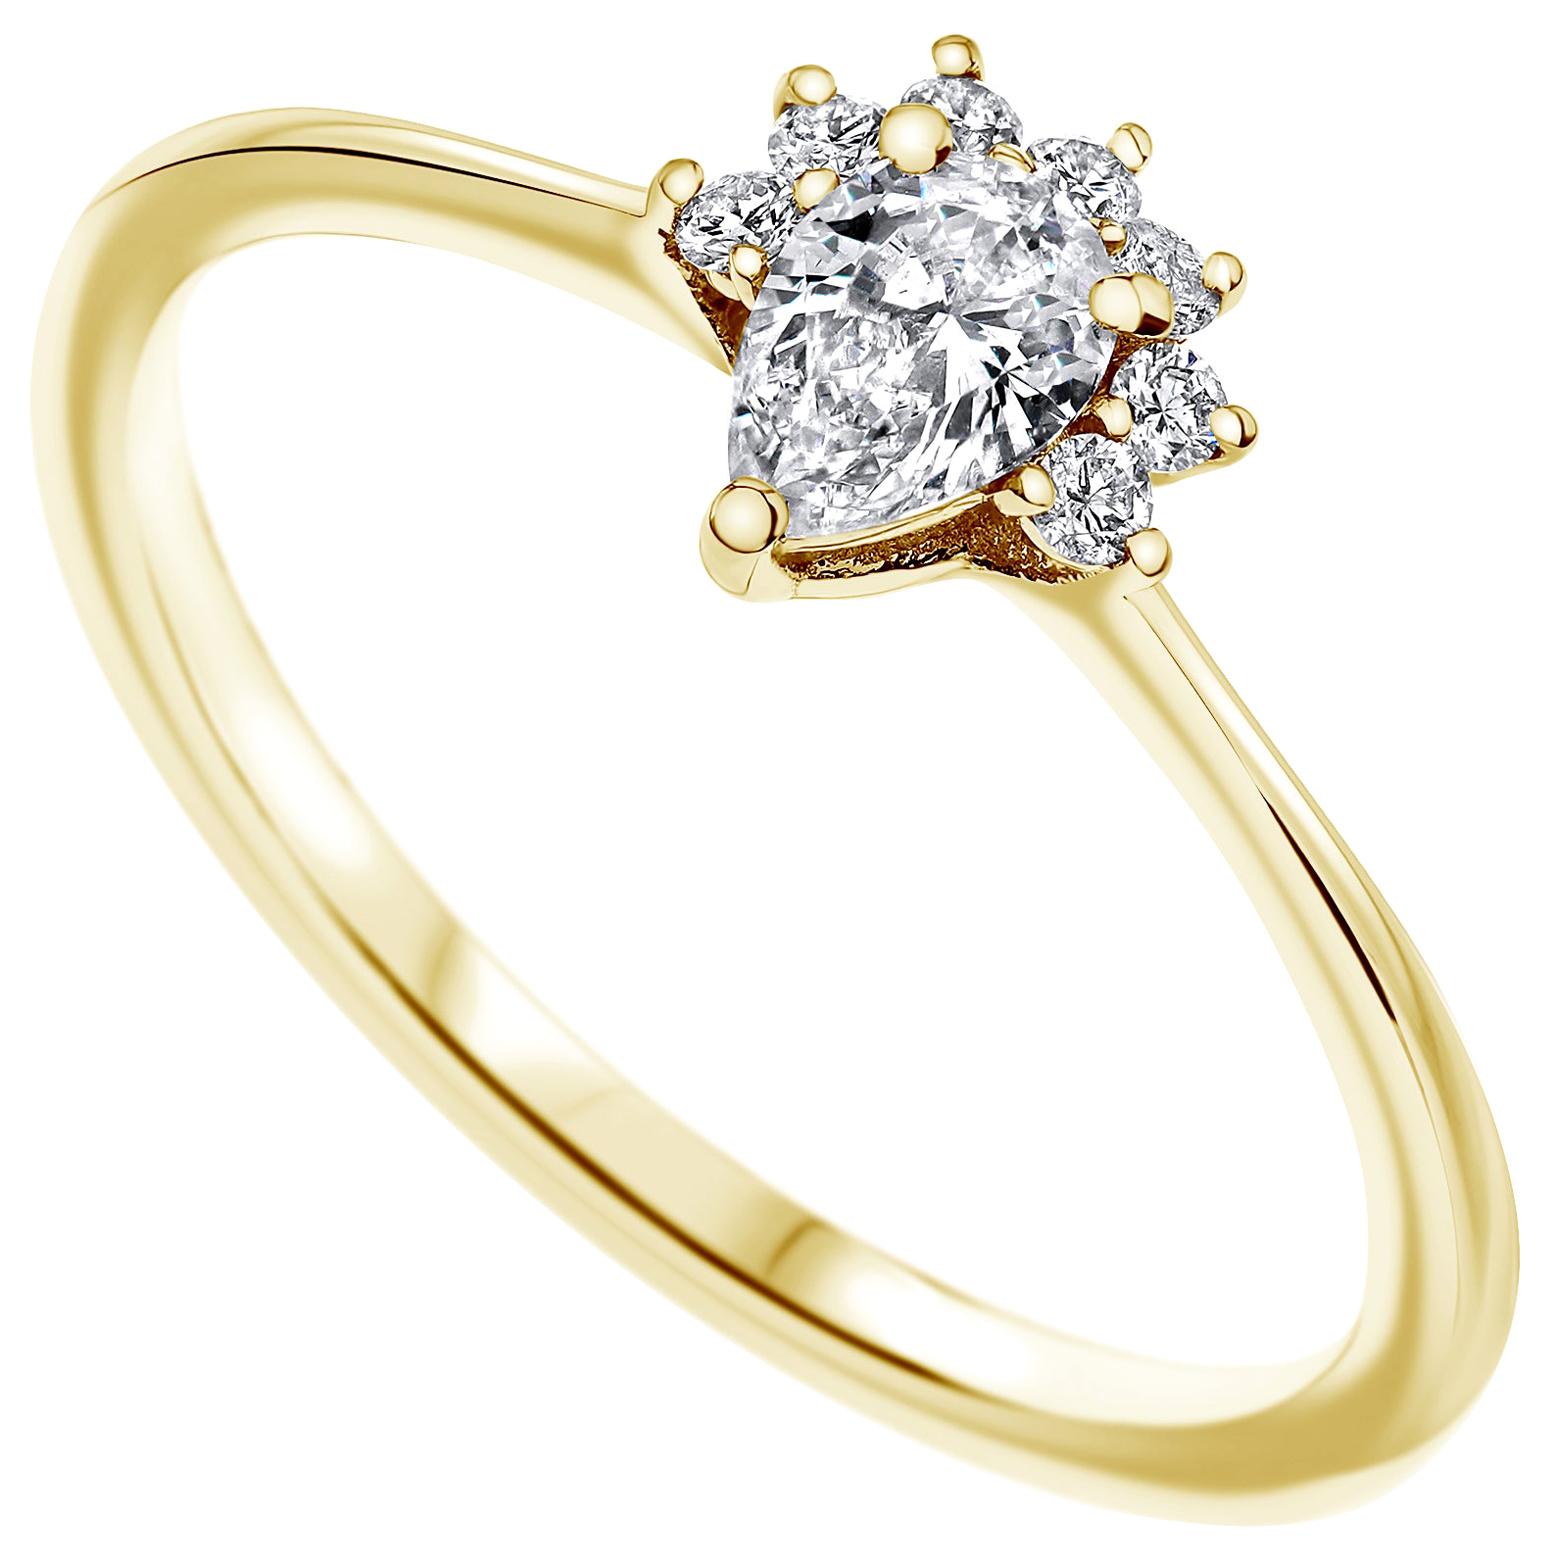 0.23 Carat Pear & Round Cut Diamonds Crown Ring 14k Yellow Gold - Shlomit Rogel